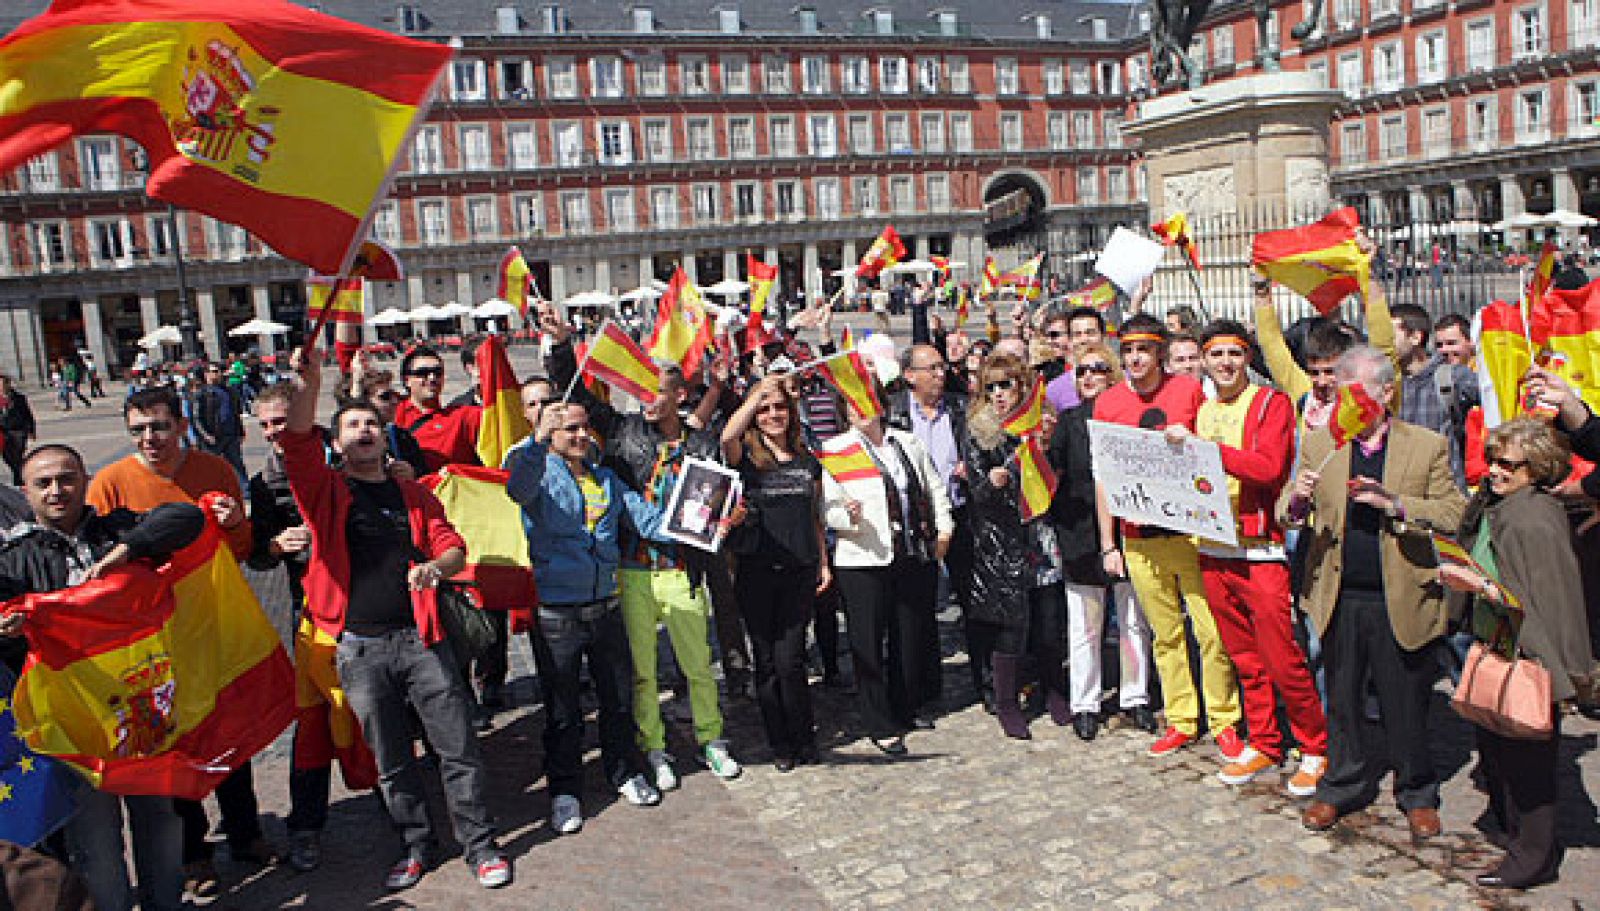 Eurofans españoles, durante la grabación de la postal eurovisiva de 2010.